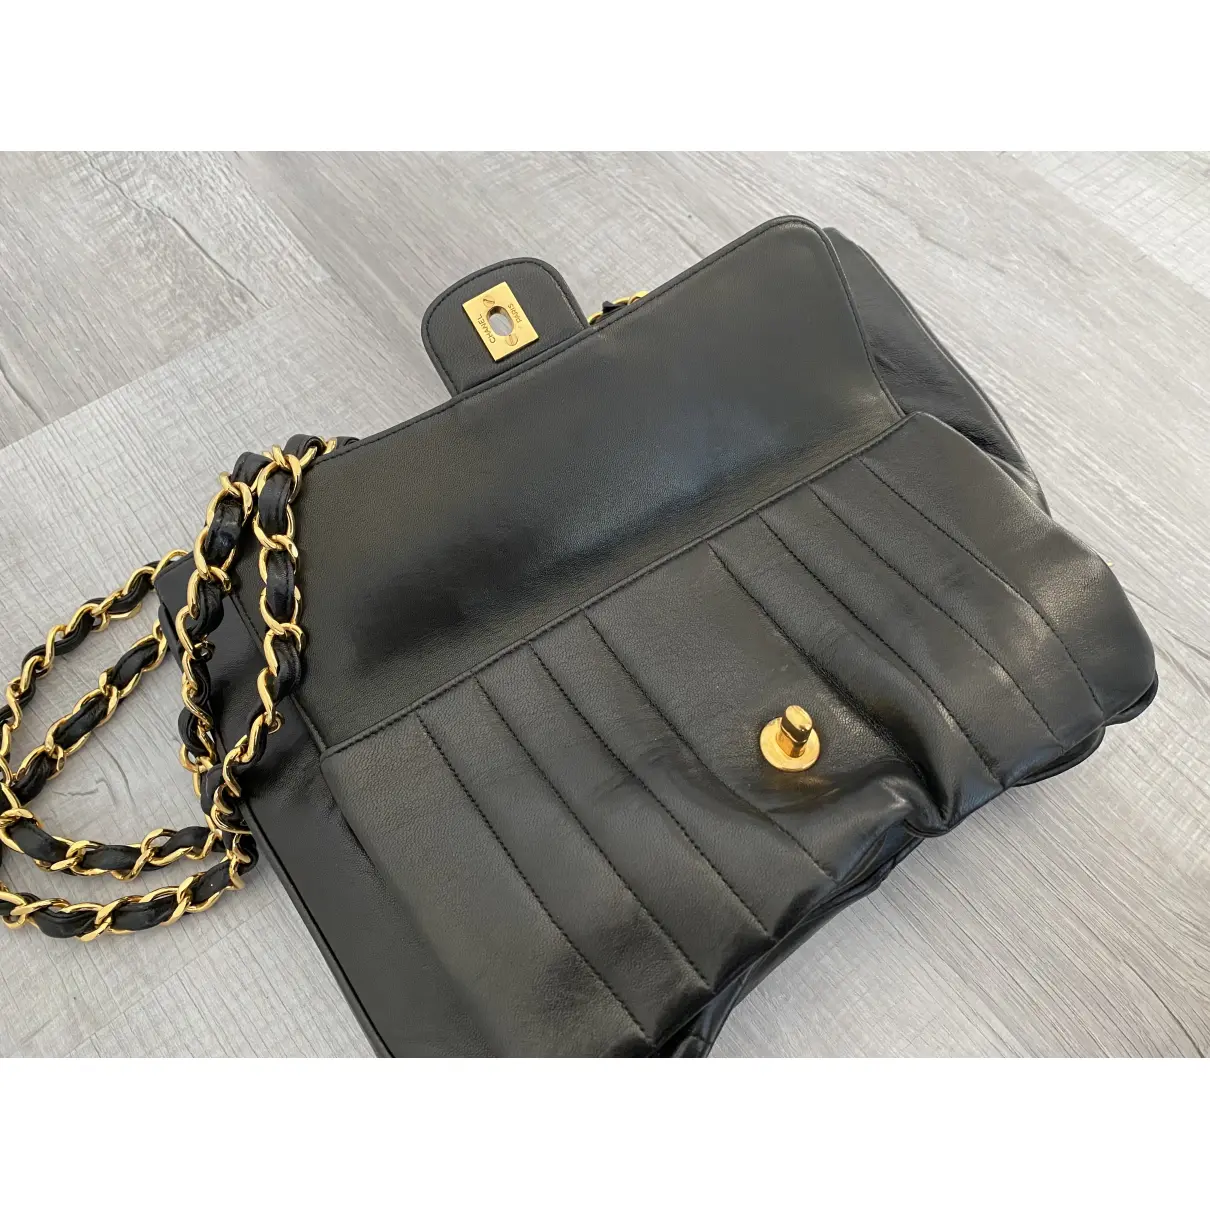 Mademoiselle leather handbag Chanel - Vintage